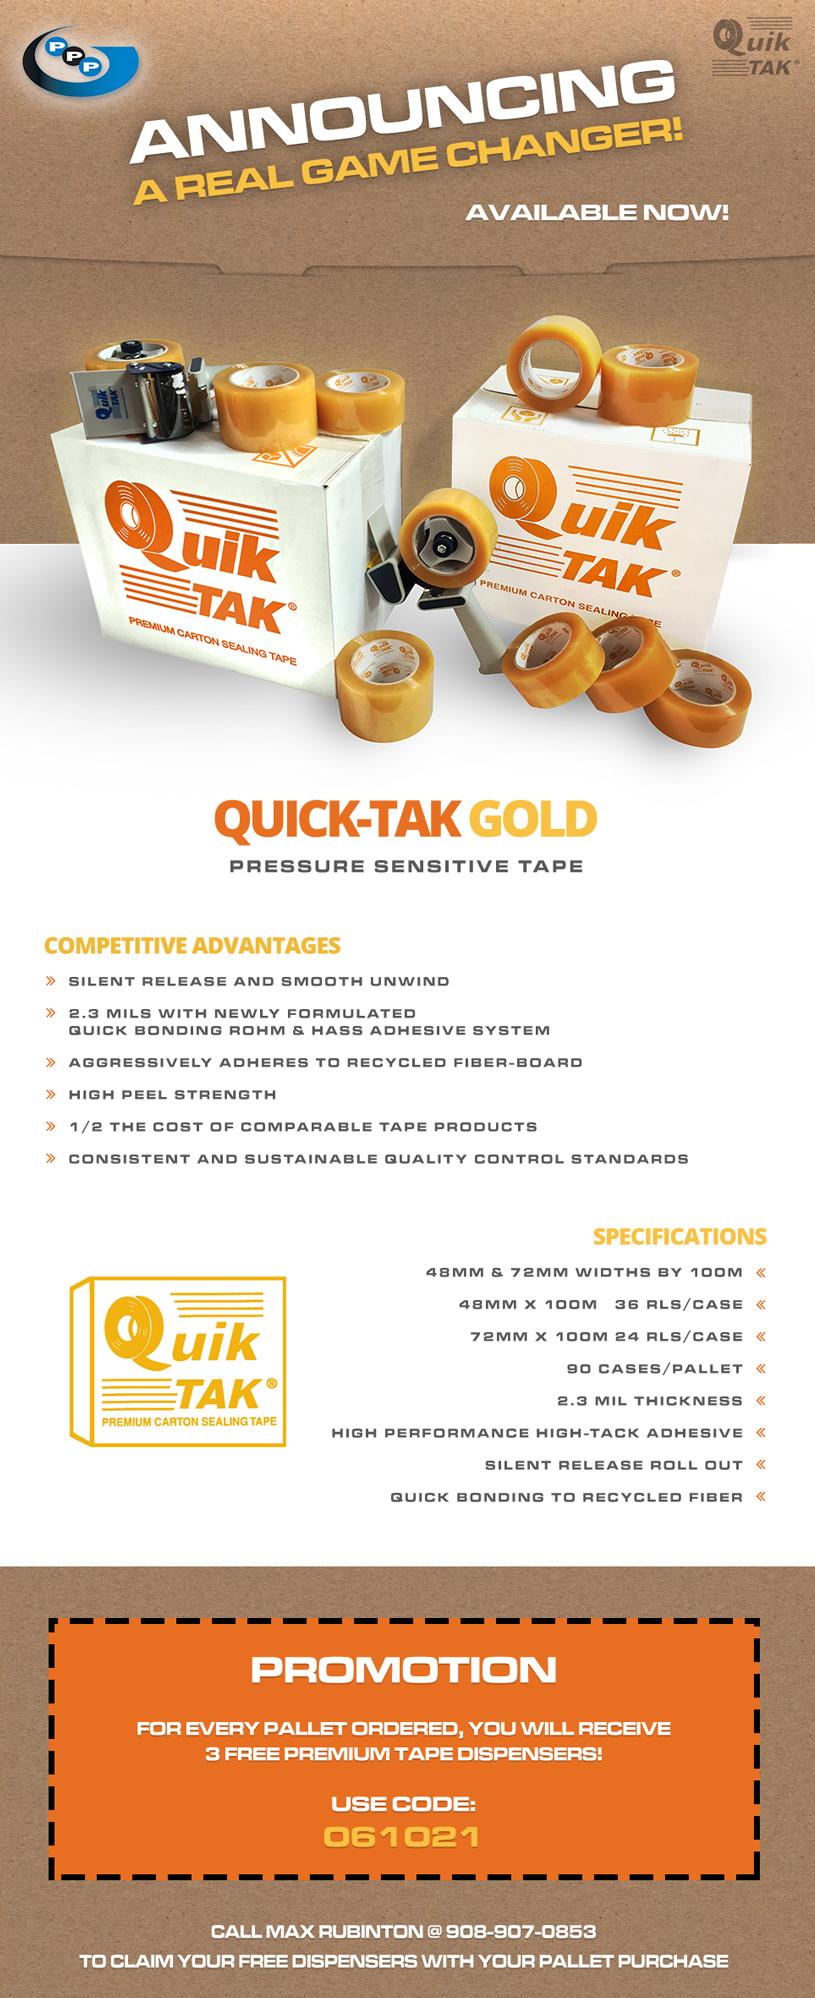 Introducing Quik Tak Gold